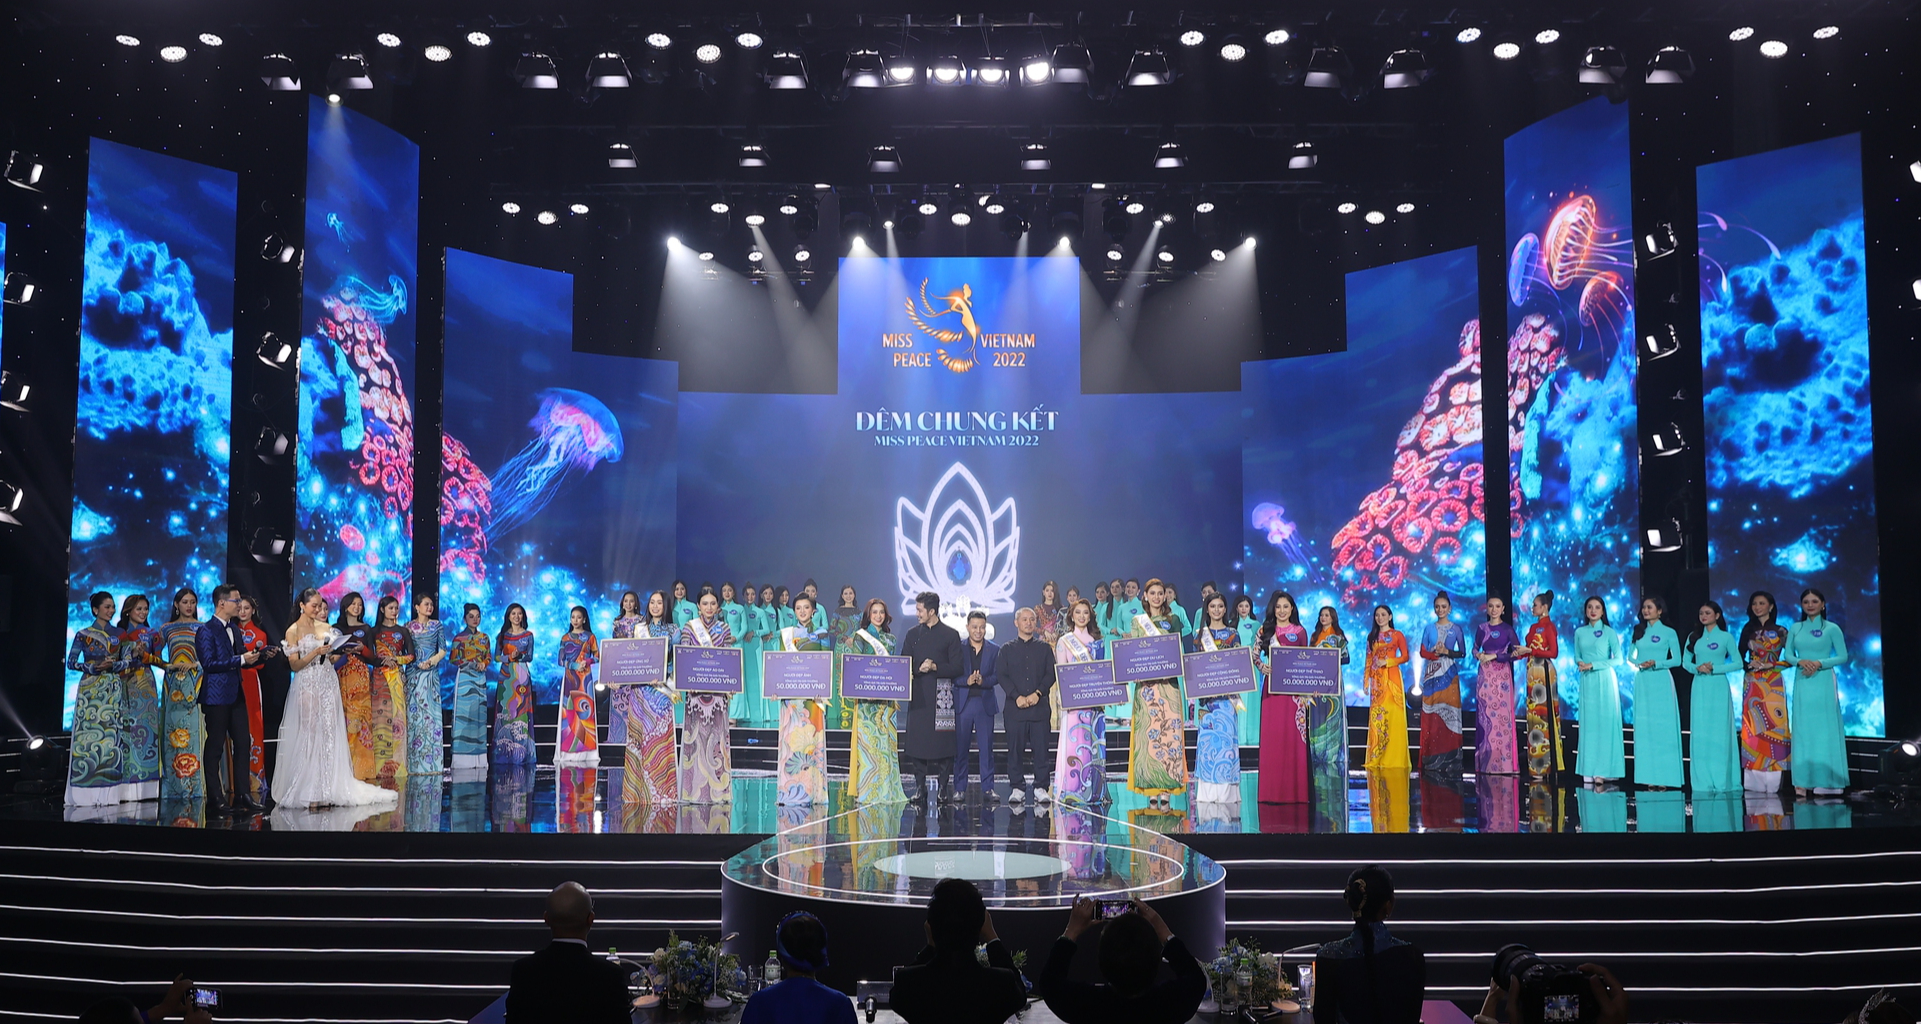 Trần Thị Ban Mai – thông dịch viên sinh năm 2000 đăng quang Miss Peace Vietnam 2022 - Ảnh 4.